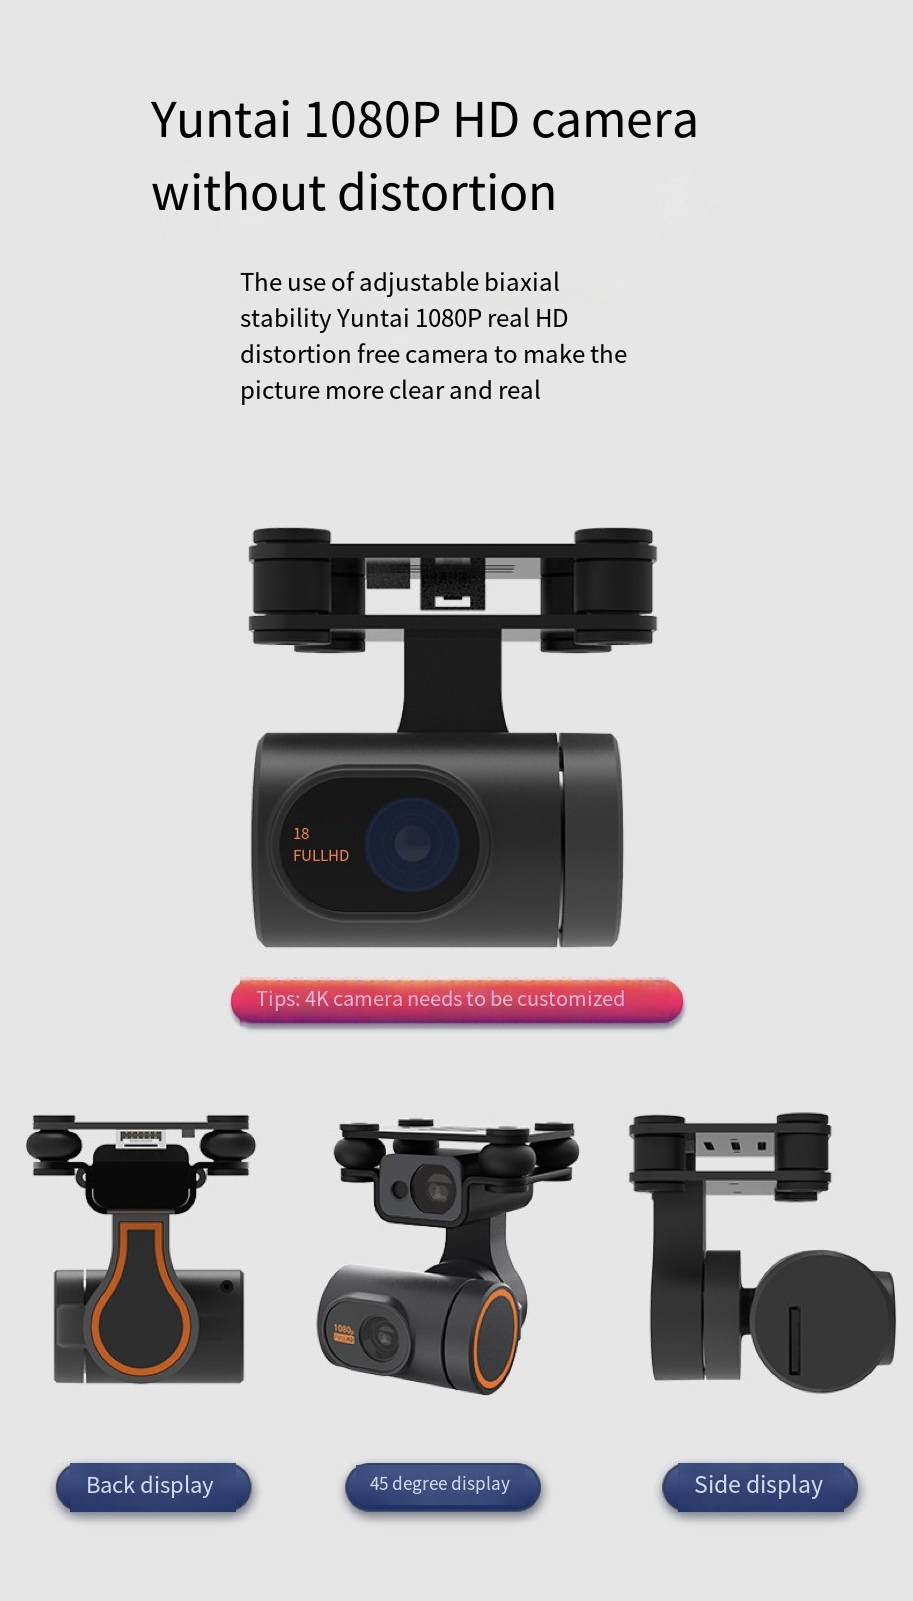 HD Camera Drone